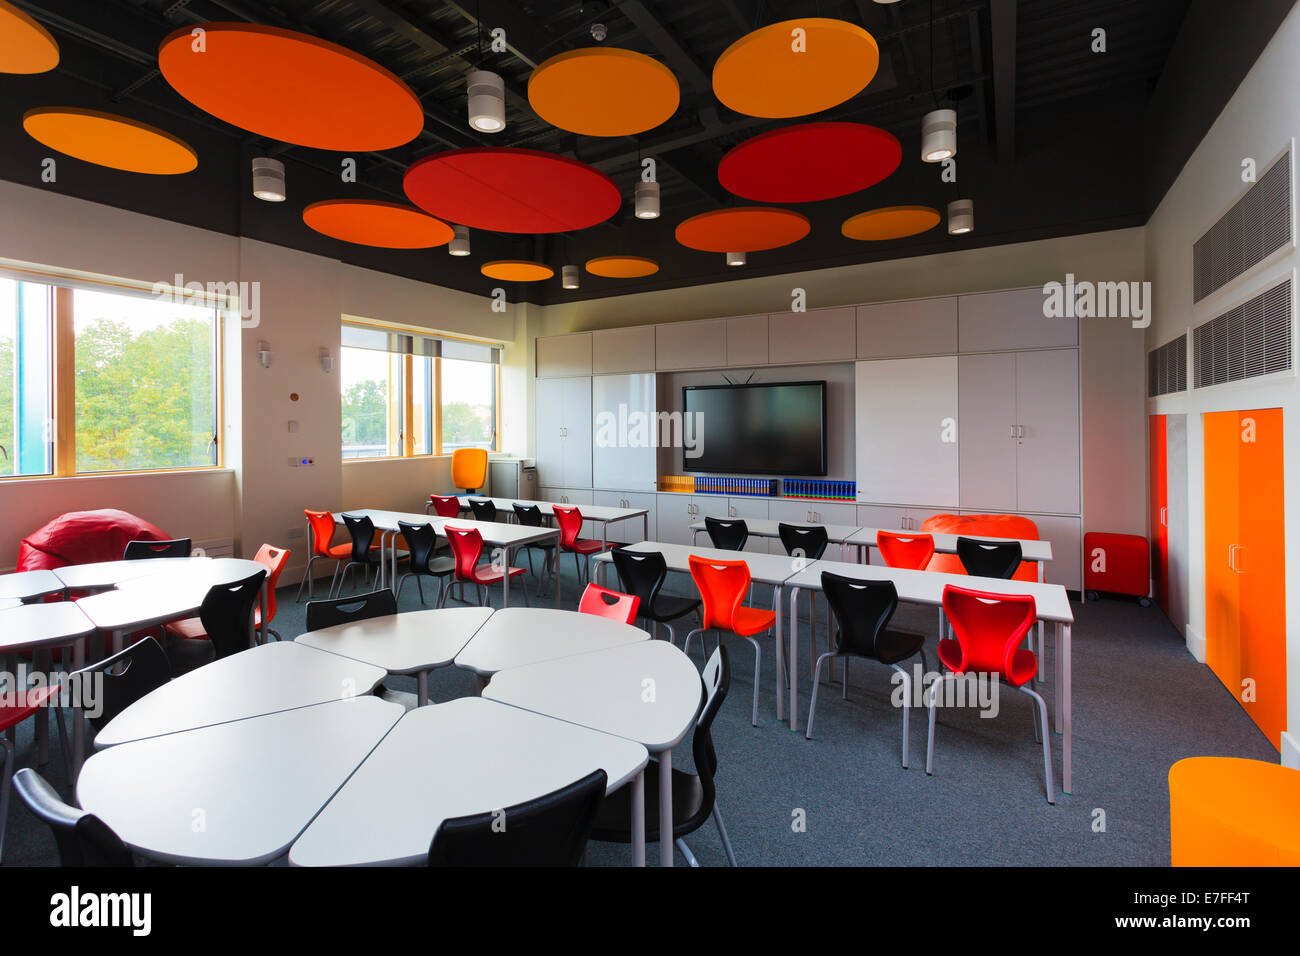 Non occupato in aula della scuola con colorato soffitto acustico dischi. Foto Stock